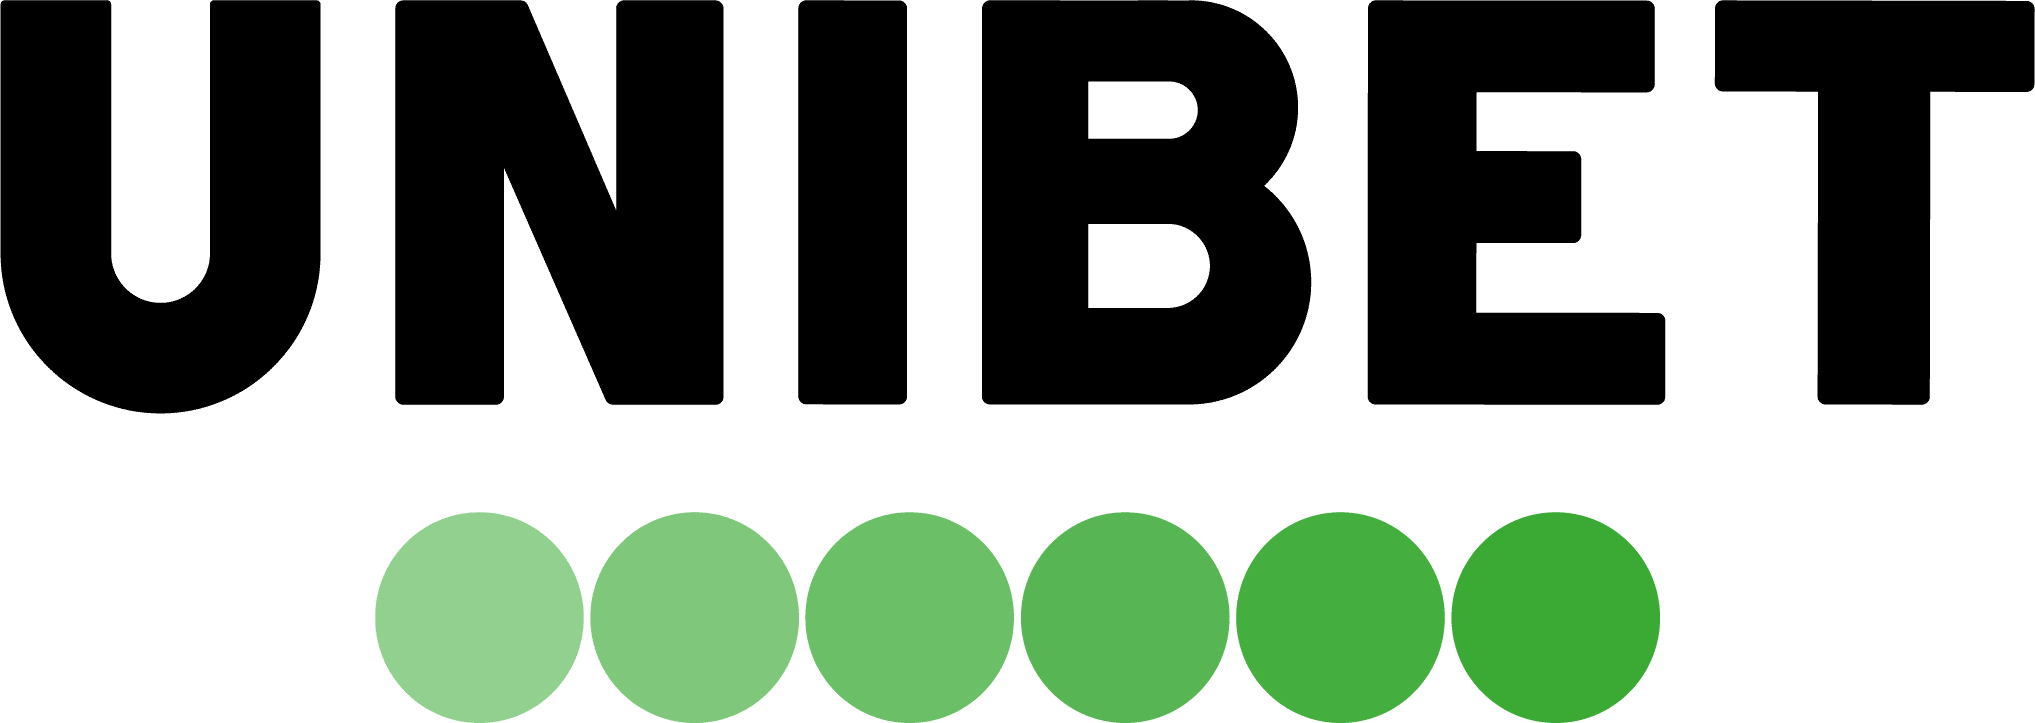 Unibet-Logo-white